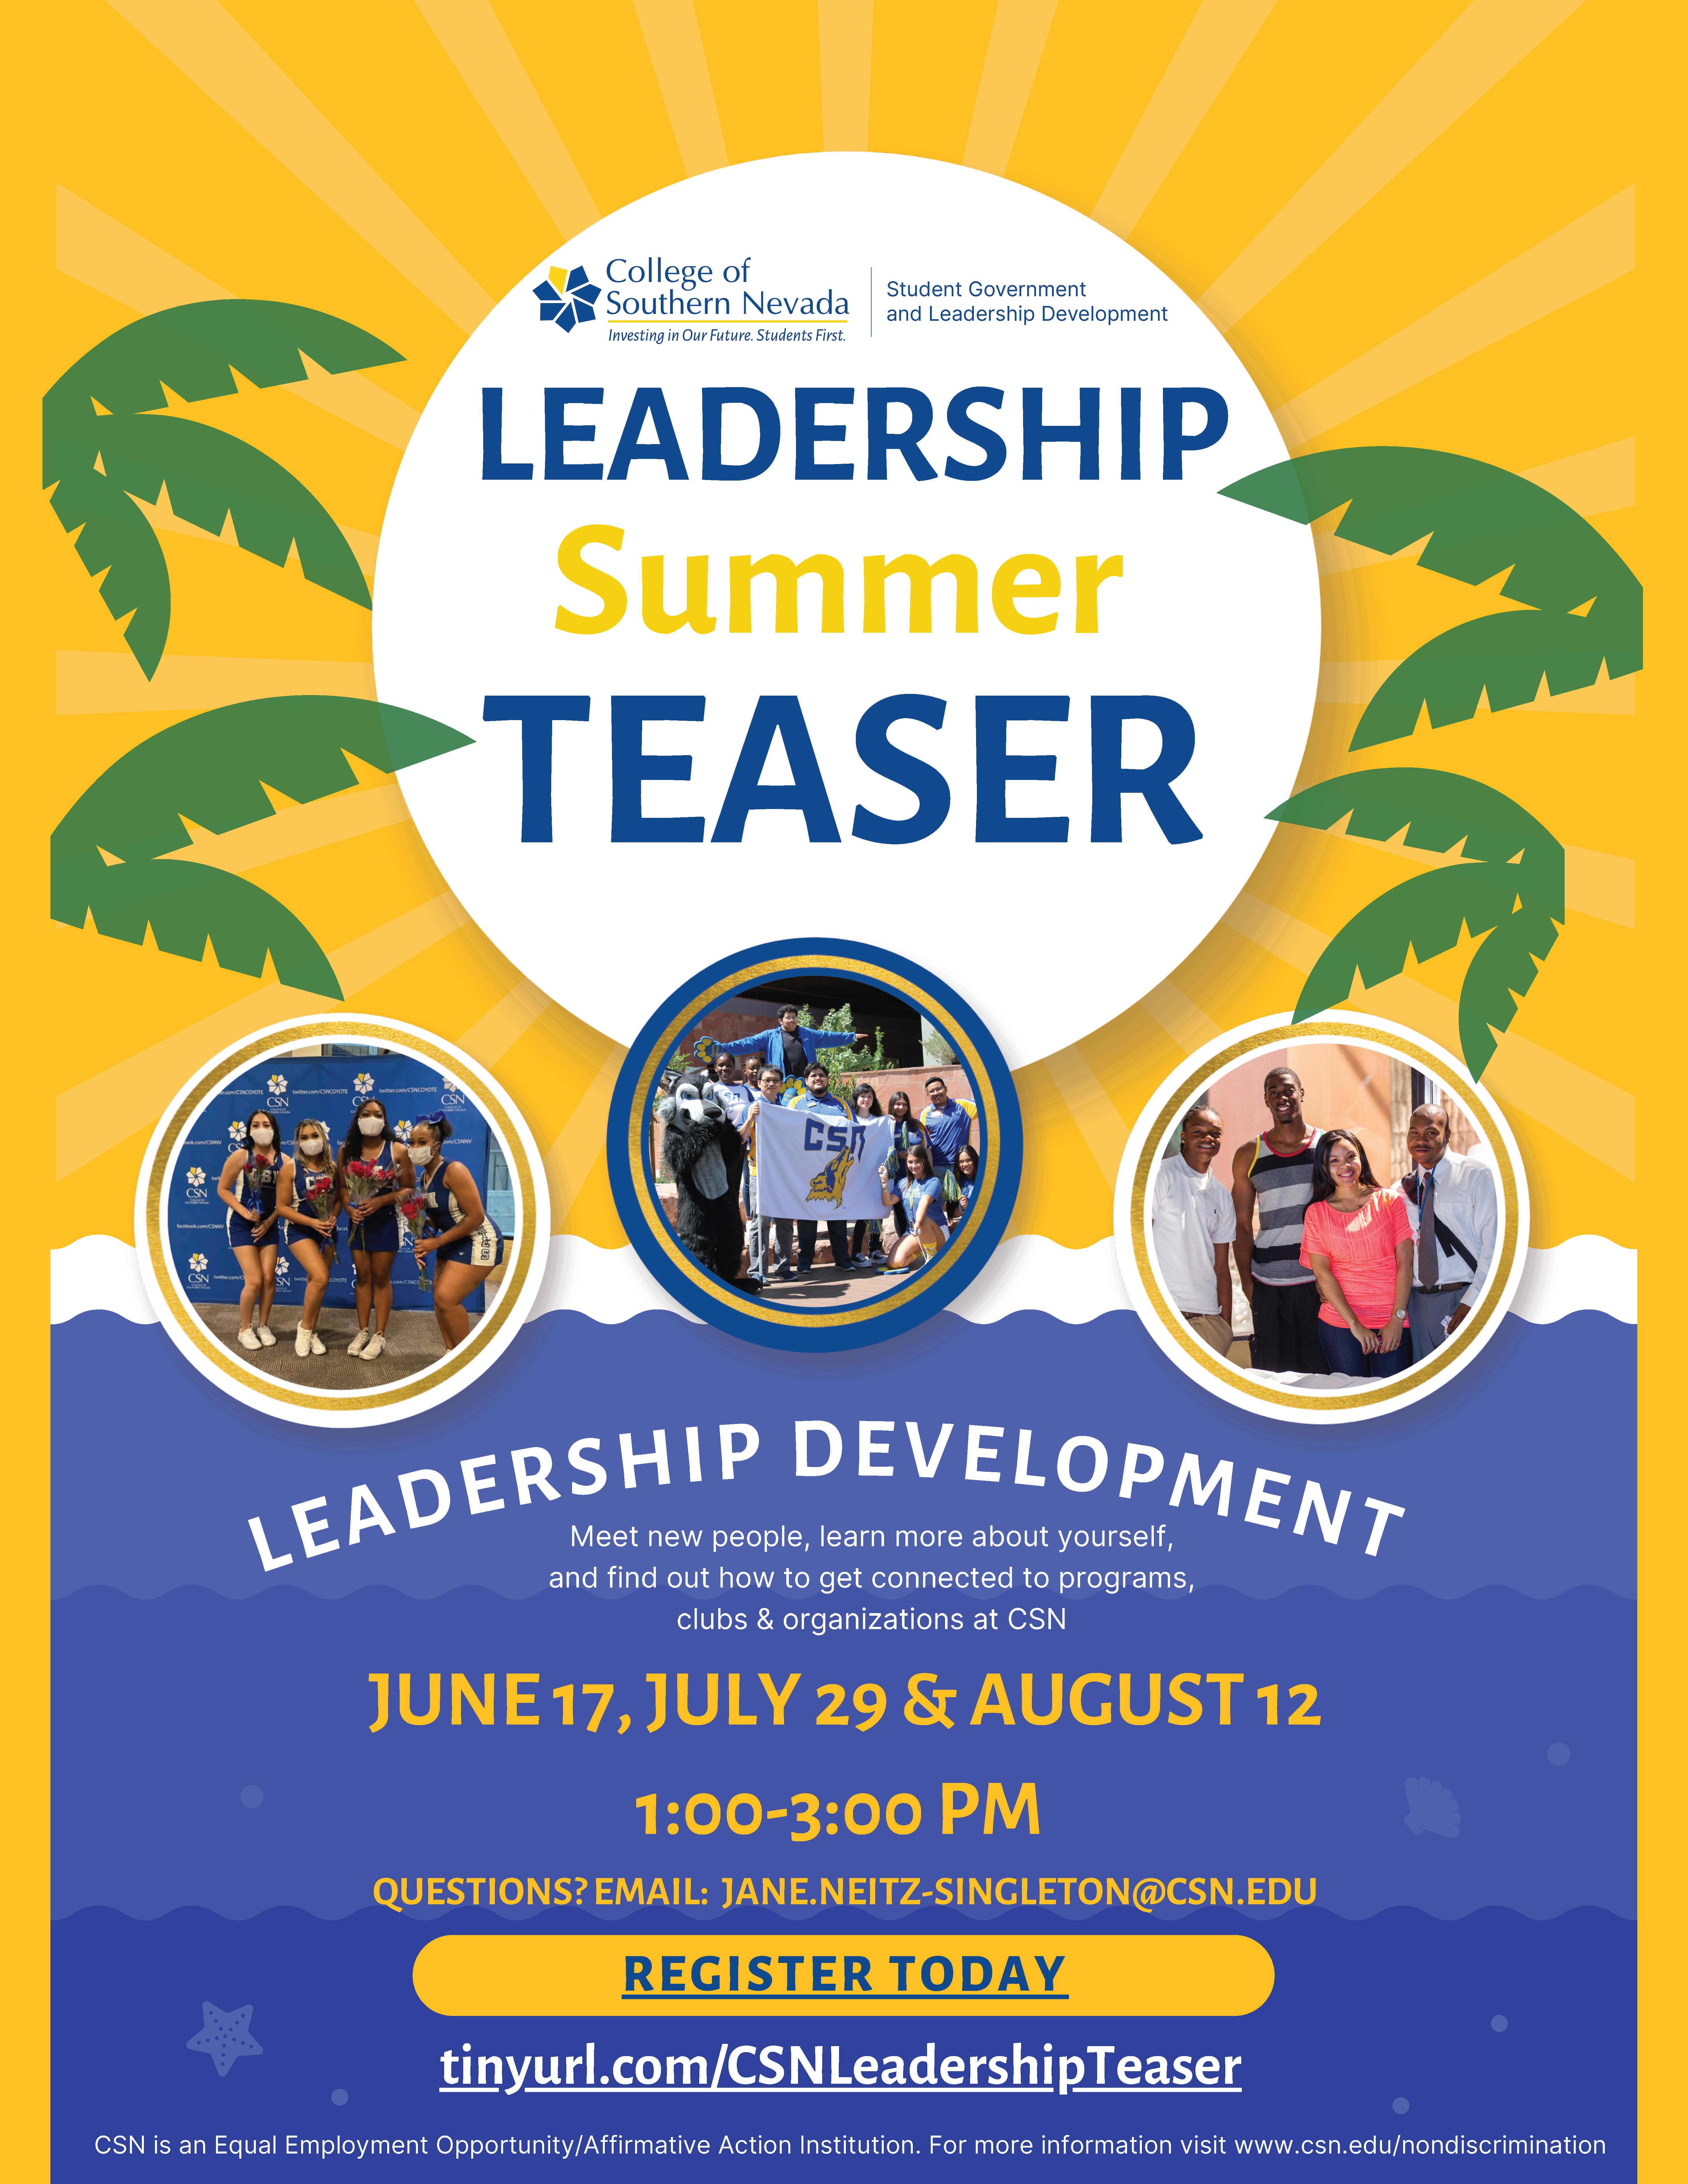 Student leadership summer event teaser flyer 